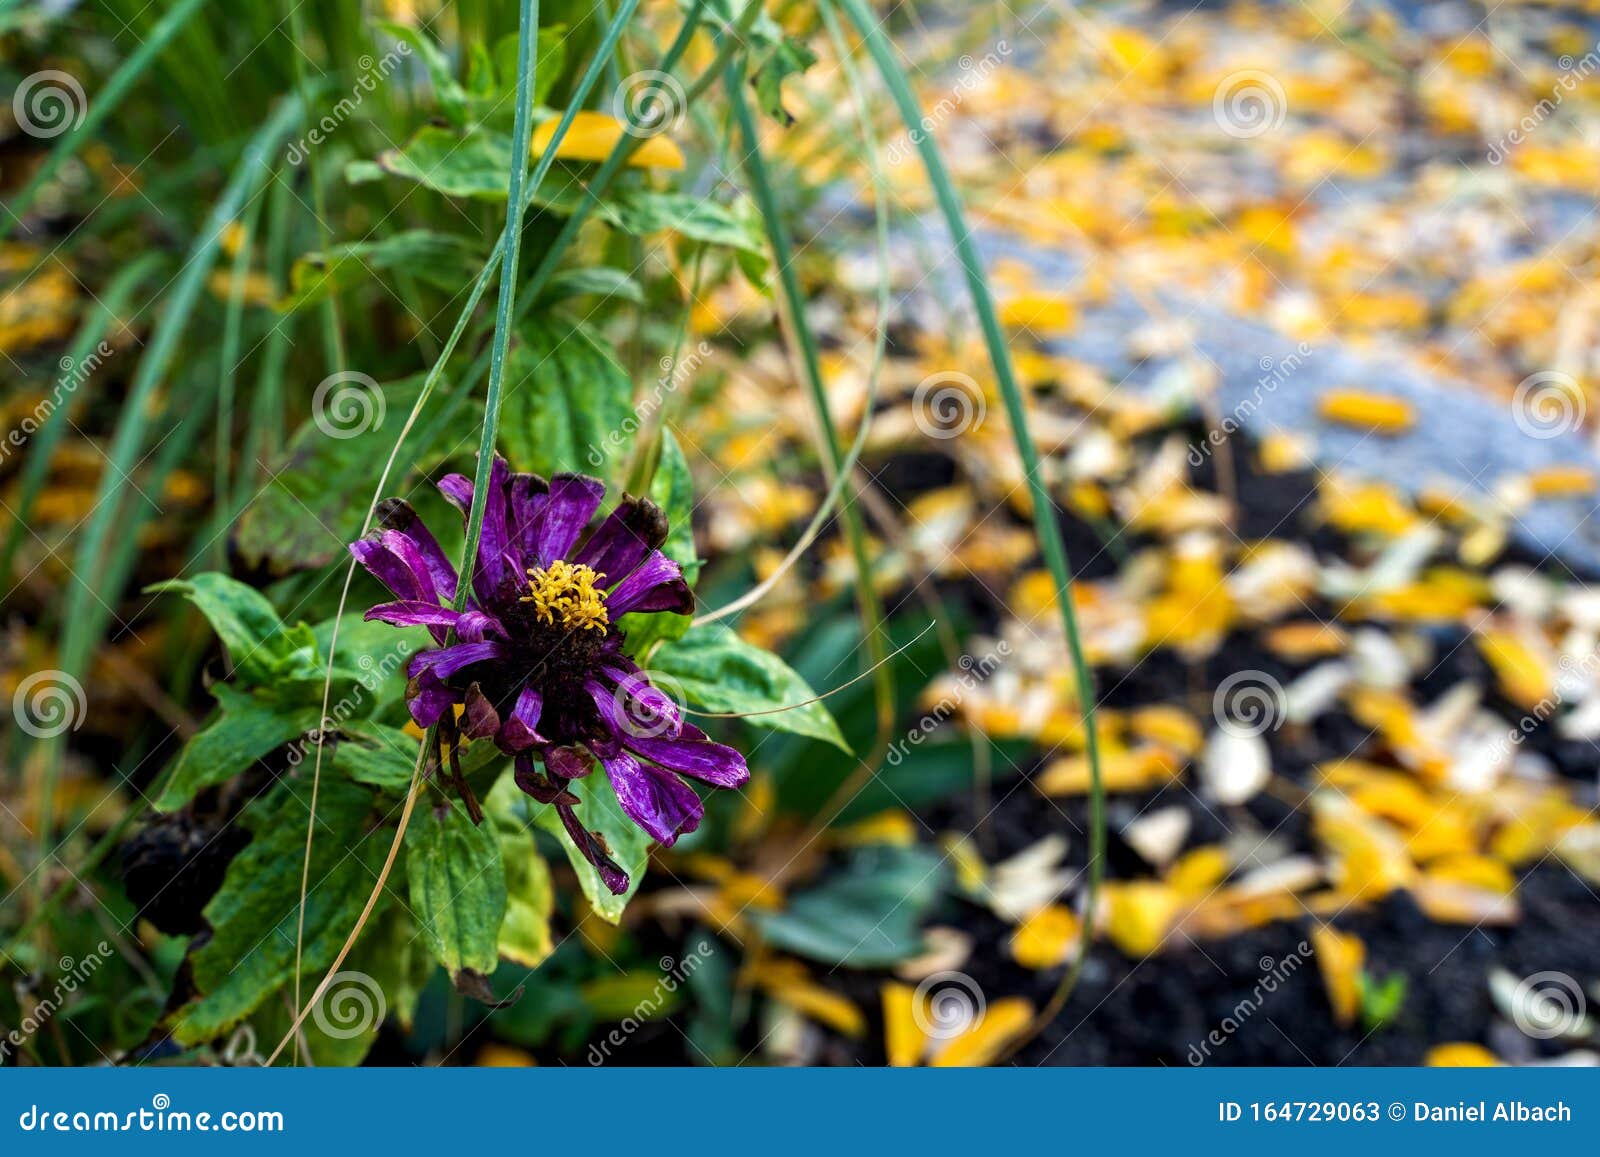 La Fleur Violette Meurt à La Fin De L'été Tandis Que Les Feuilles Jaunes  Sont Posées Au Sol Image stock - Image du flore, fleur: 164729063